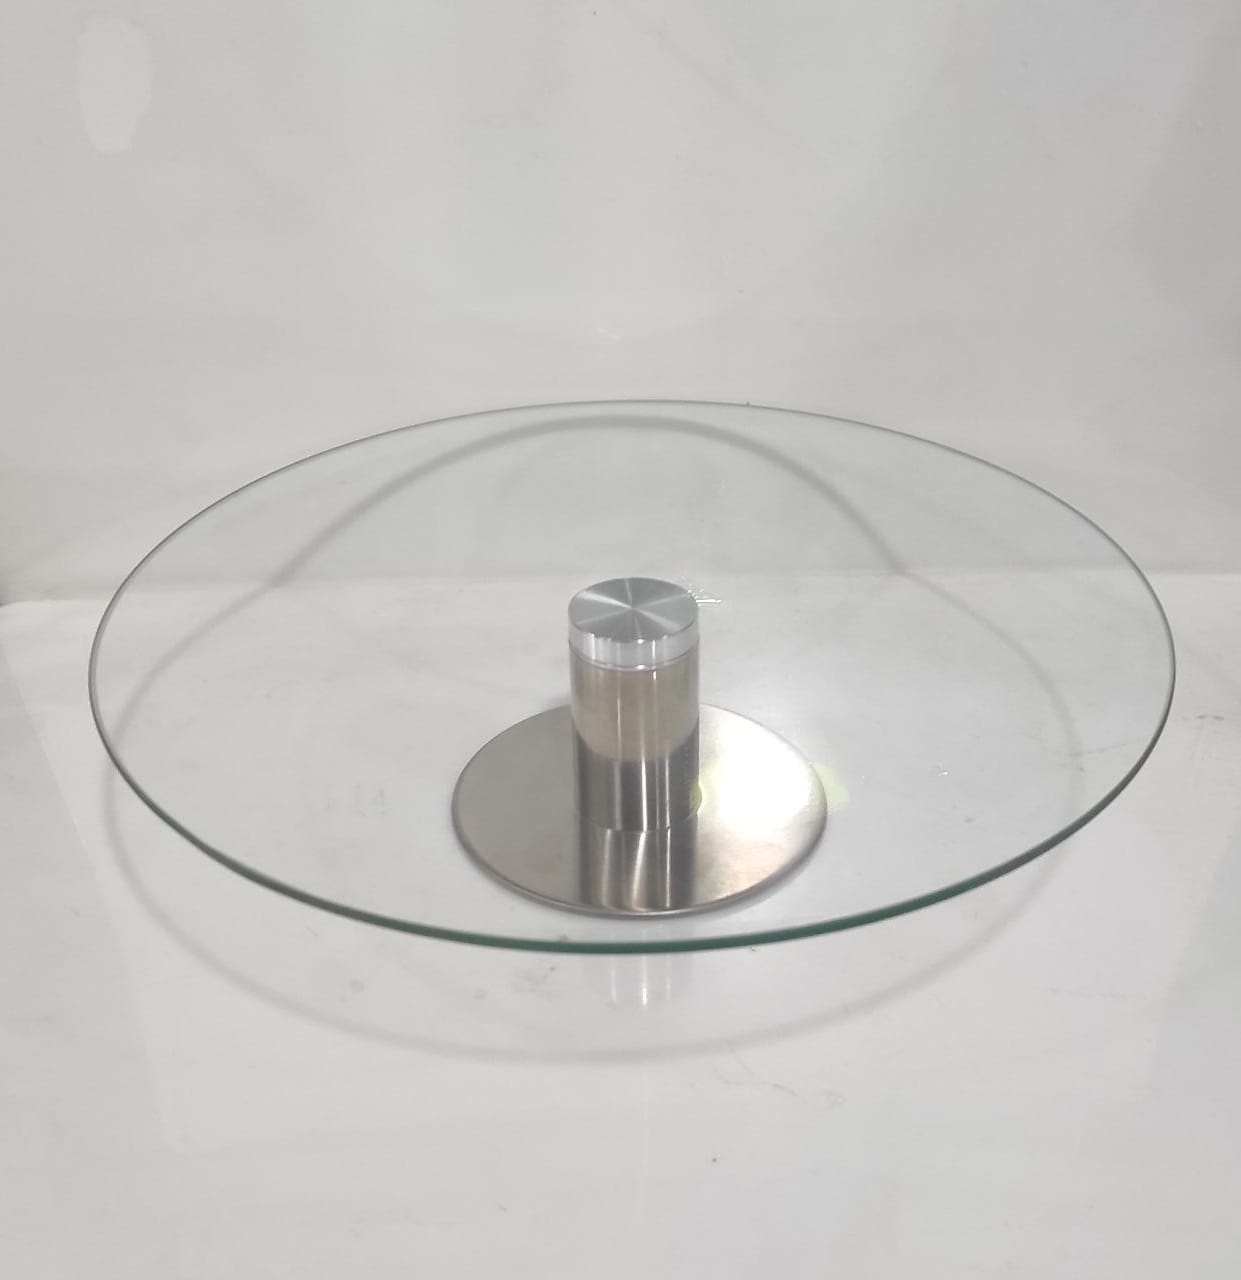 Plato giratorio vidrio 25 cm - Comprar en DULCE ESQUINA